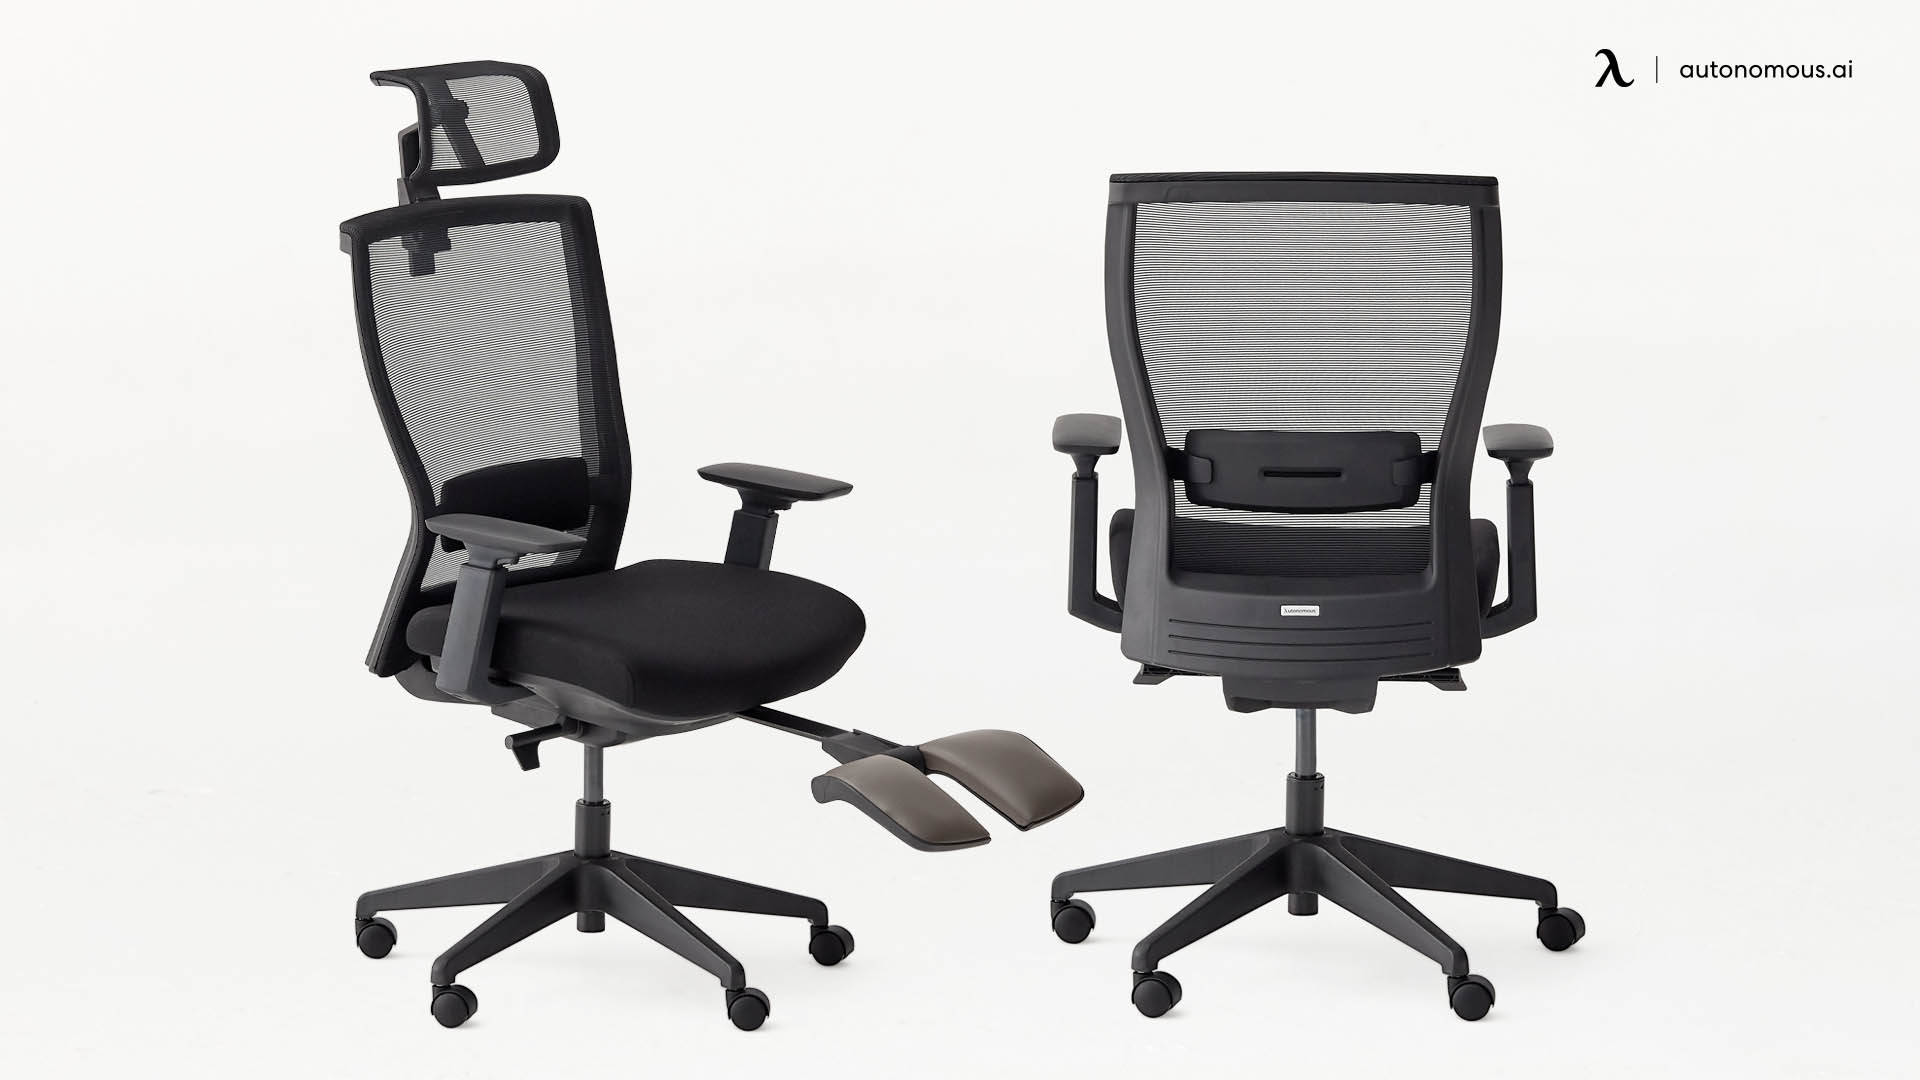 ErgoChair Recline high back office chair